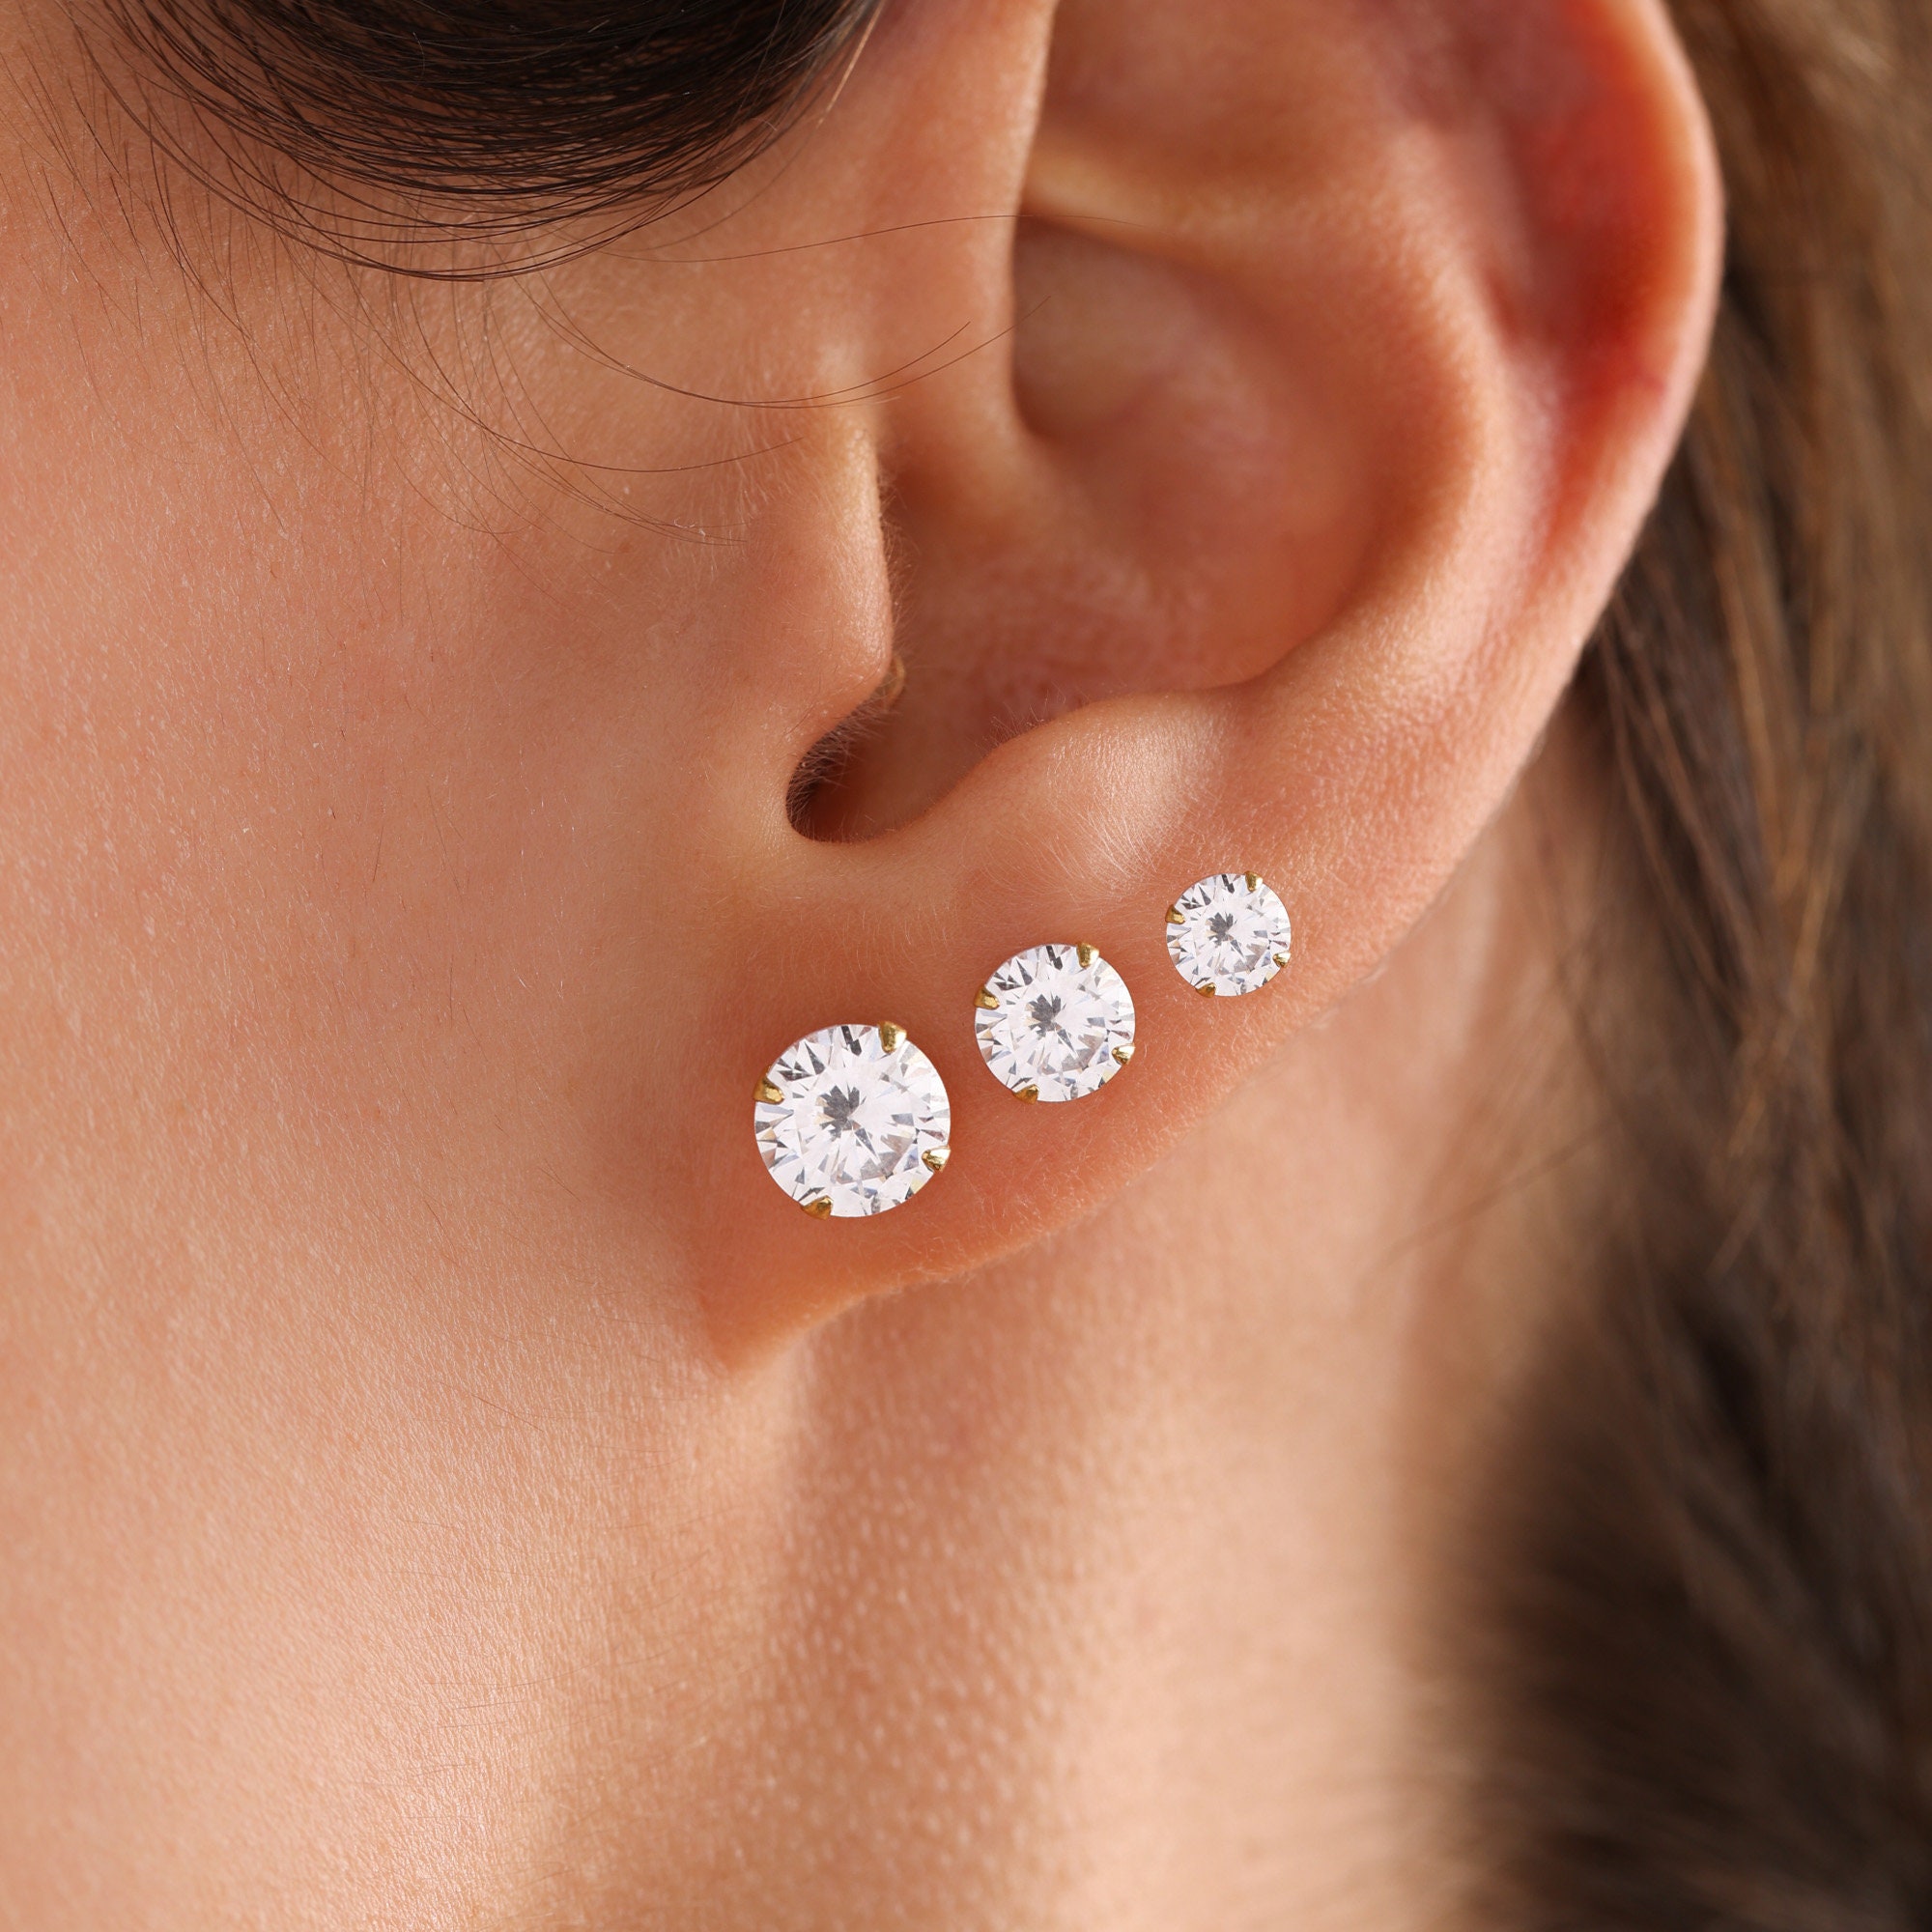 Best Minimalist Earrings for Everyday Wear | Linjer Jewelry